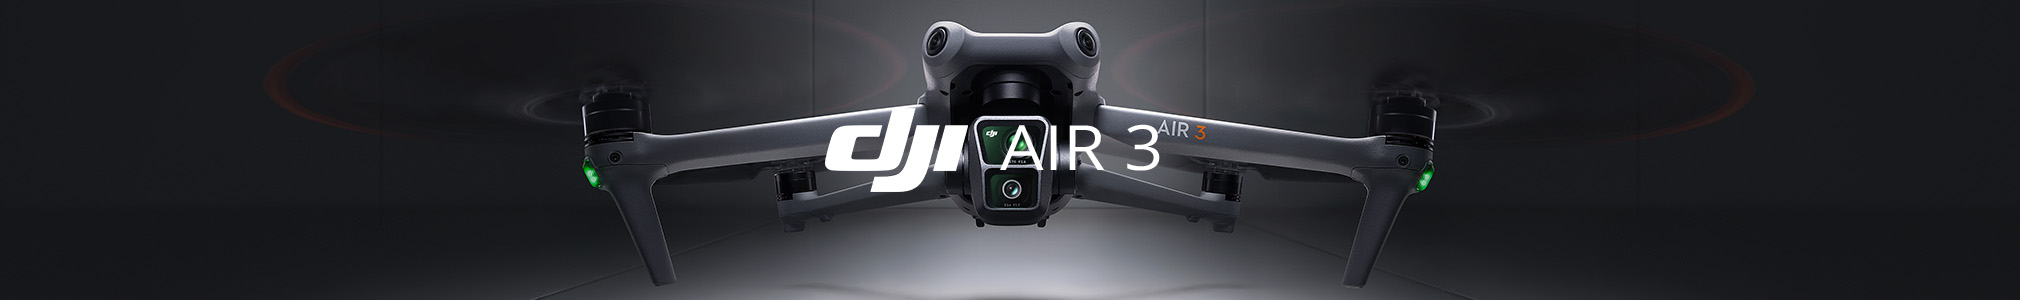 DJI Air 3